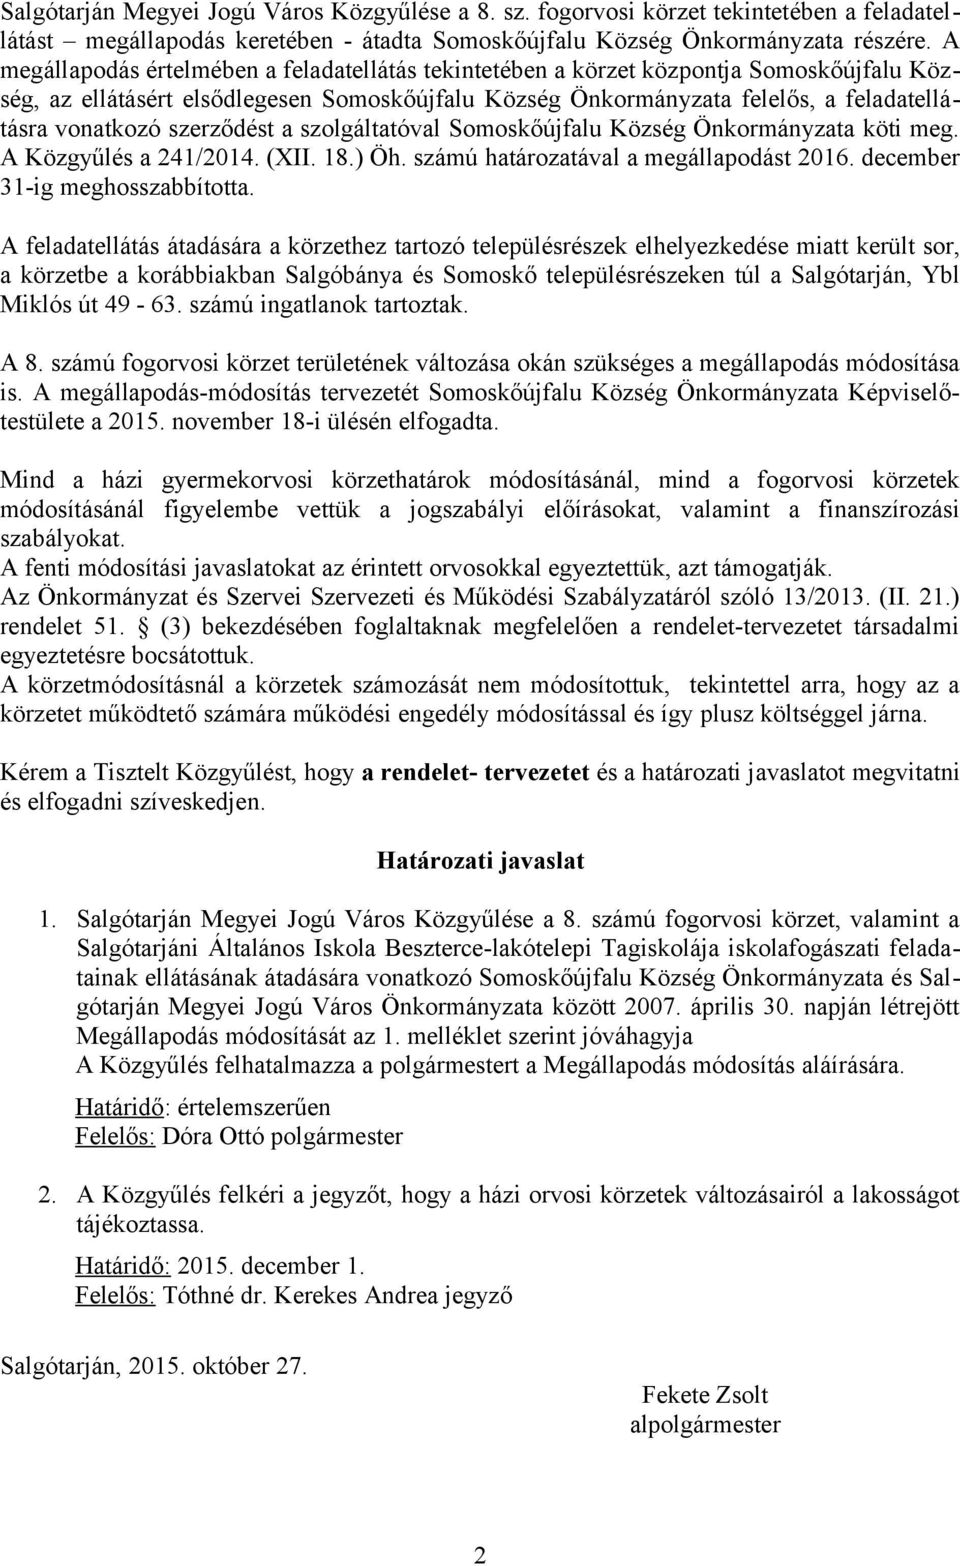 szerződést a szolgáltatóval Somoskőújfalu Község Önkormányzata köti meg. A Közgyűlés a 241/2014. (XII. 18.) Öh. számú határozatával a megállapodást 2016. december 31-ig meghosszabbította.